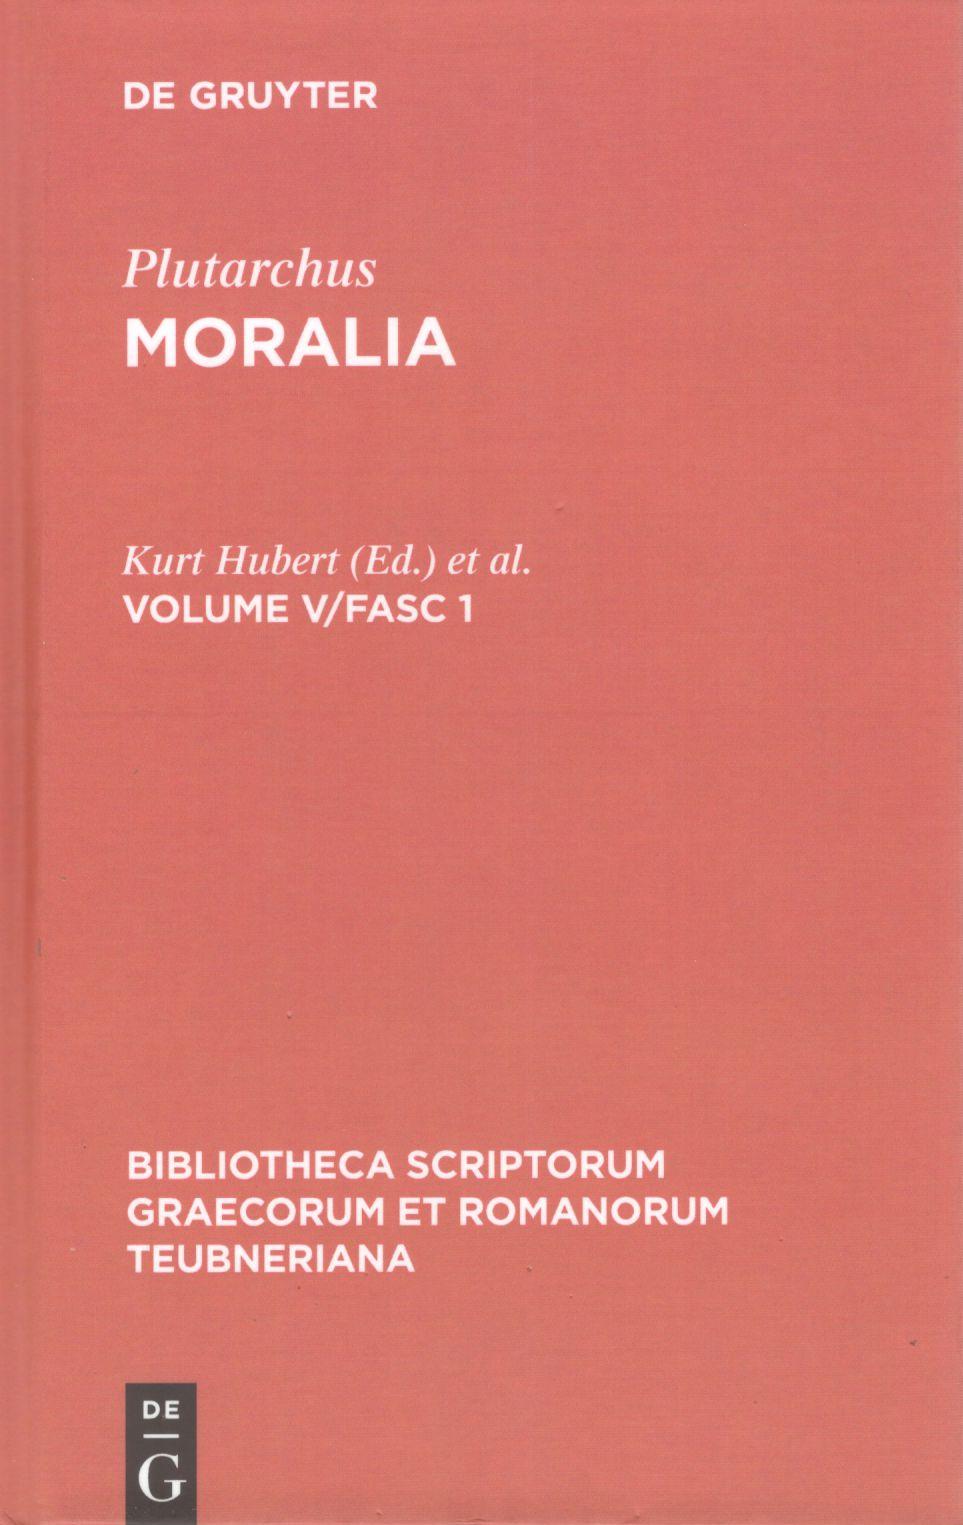 PLUTARCHI MORALIA VOLUME V/FASC. 1